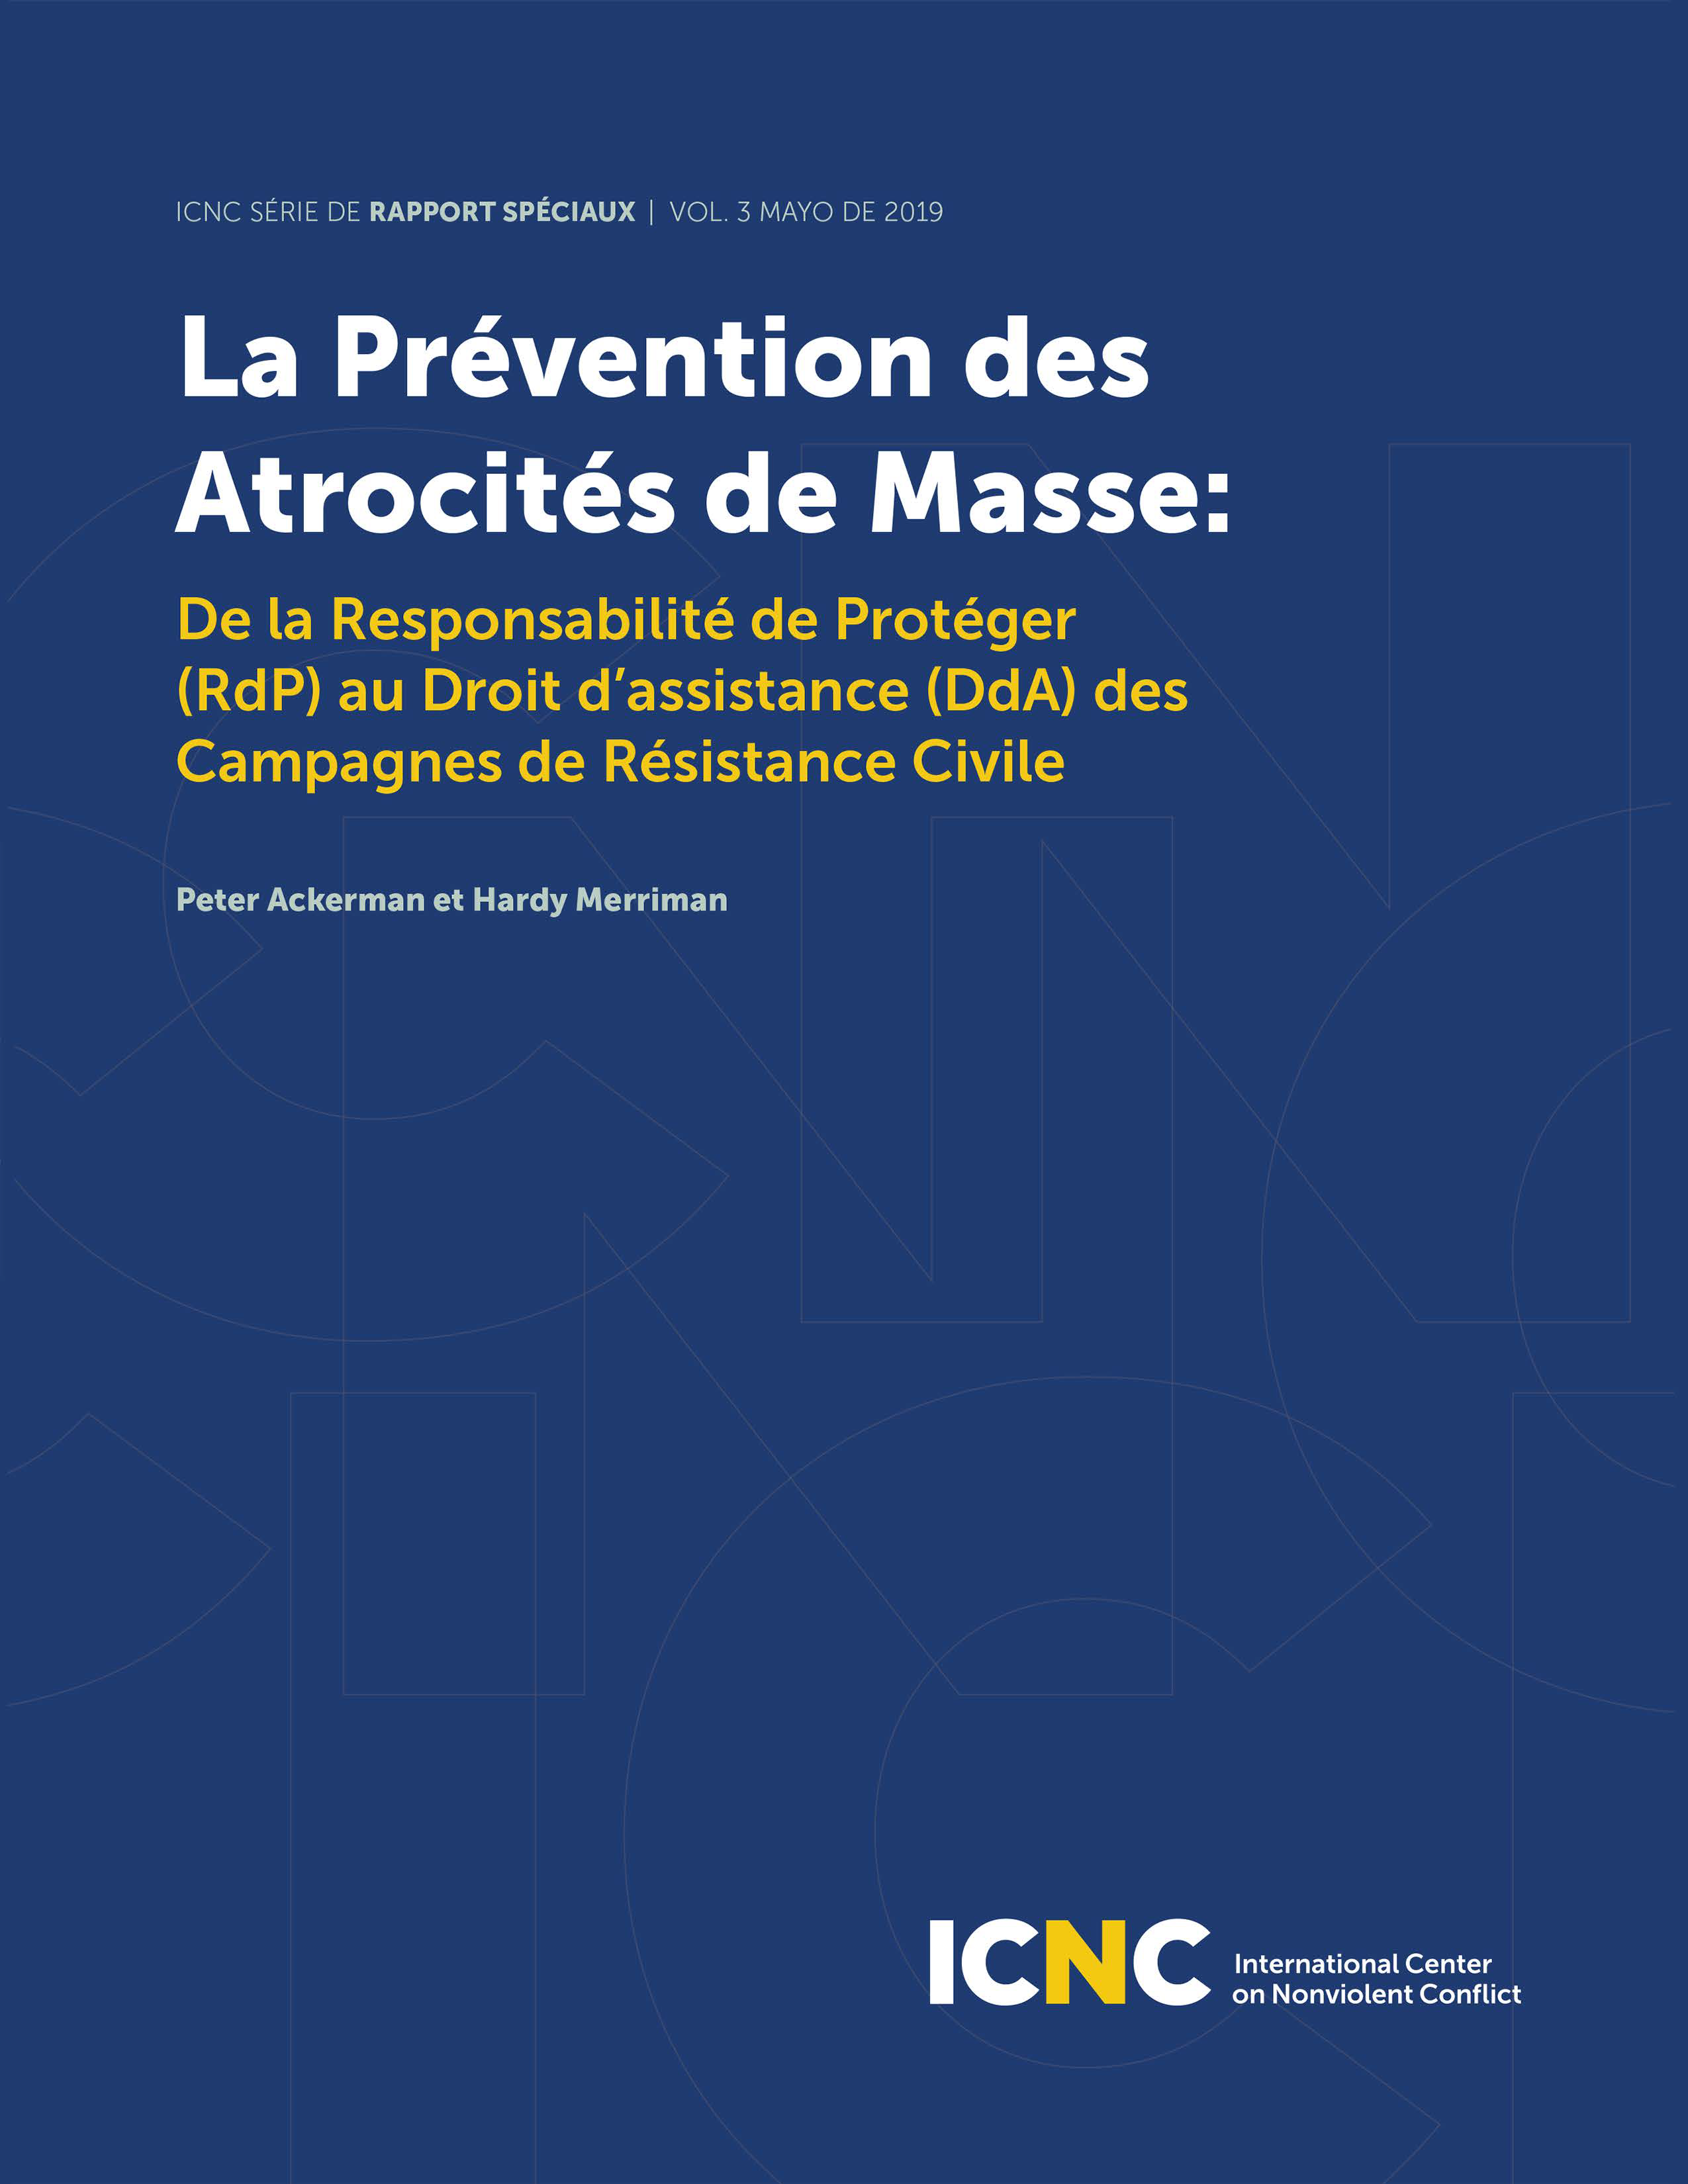 La Prévention des Atrocités de Masse: De la Responsabilité de Protéger (RdP) au Droit d’assistance (DdA) des Campagnes de Résistance Civile